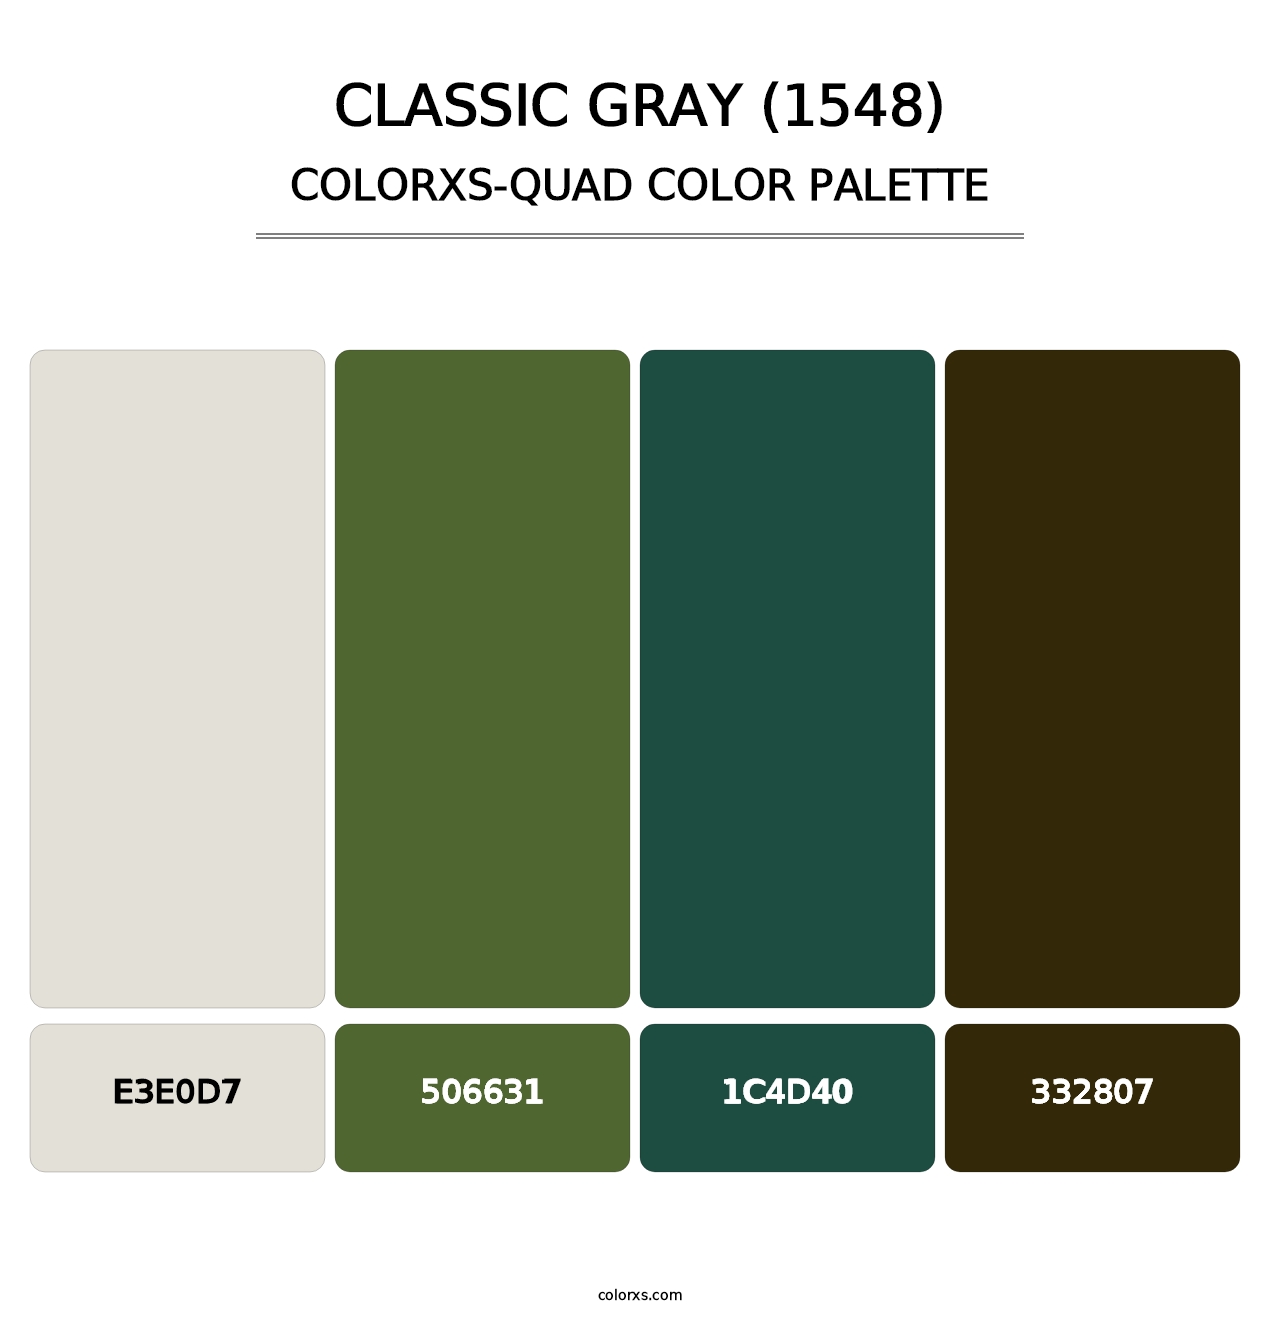 Classic Gray (1548) - Colorxs Quad Palette